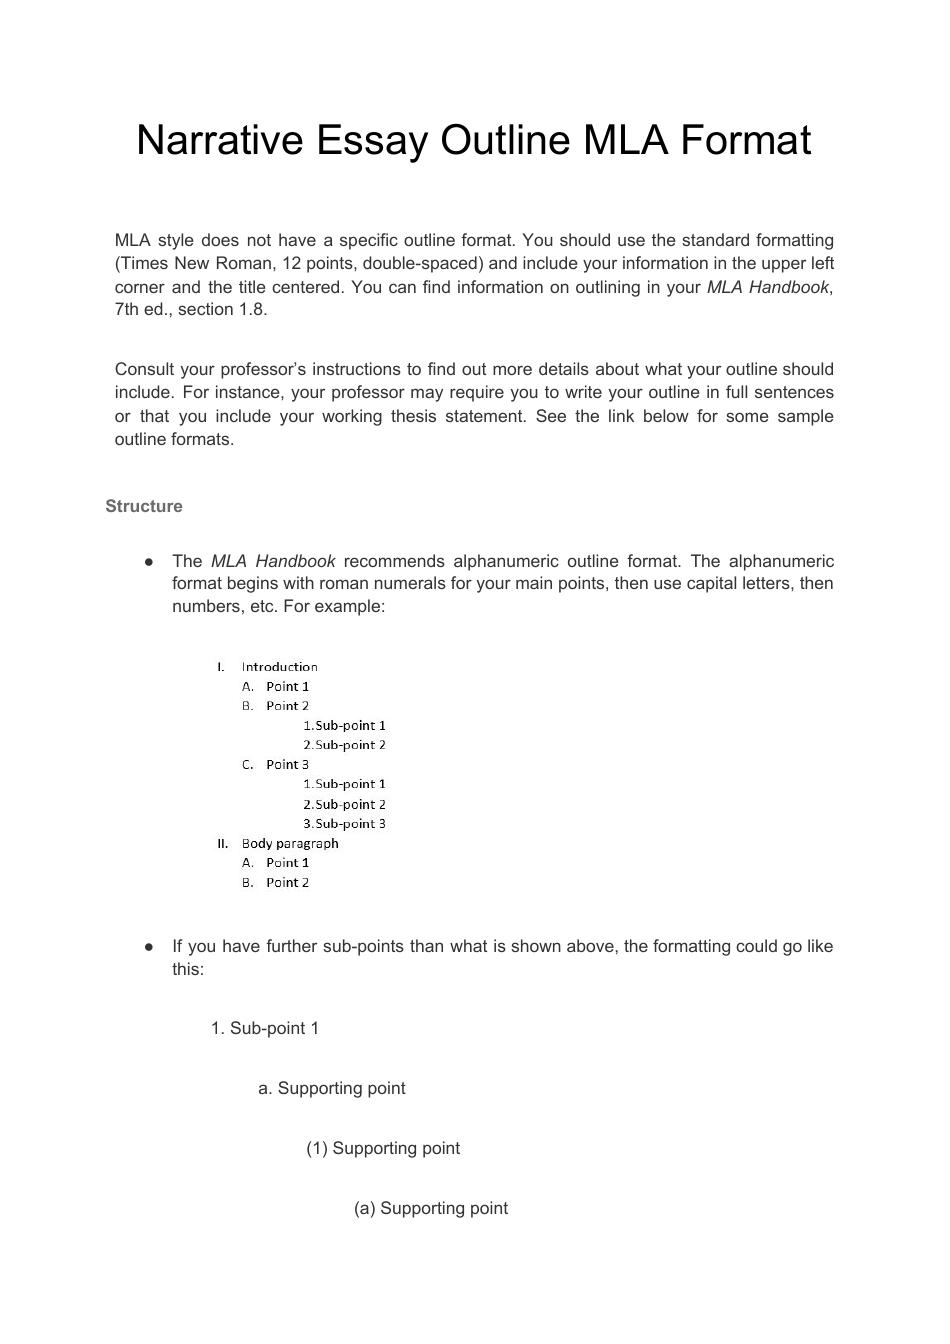 Narrative Essay Outline - Mla Format Download Printable PDF ...